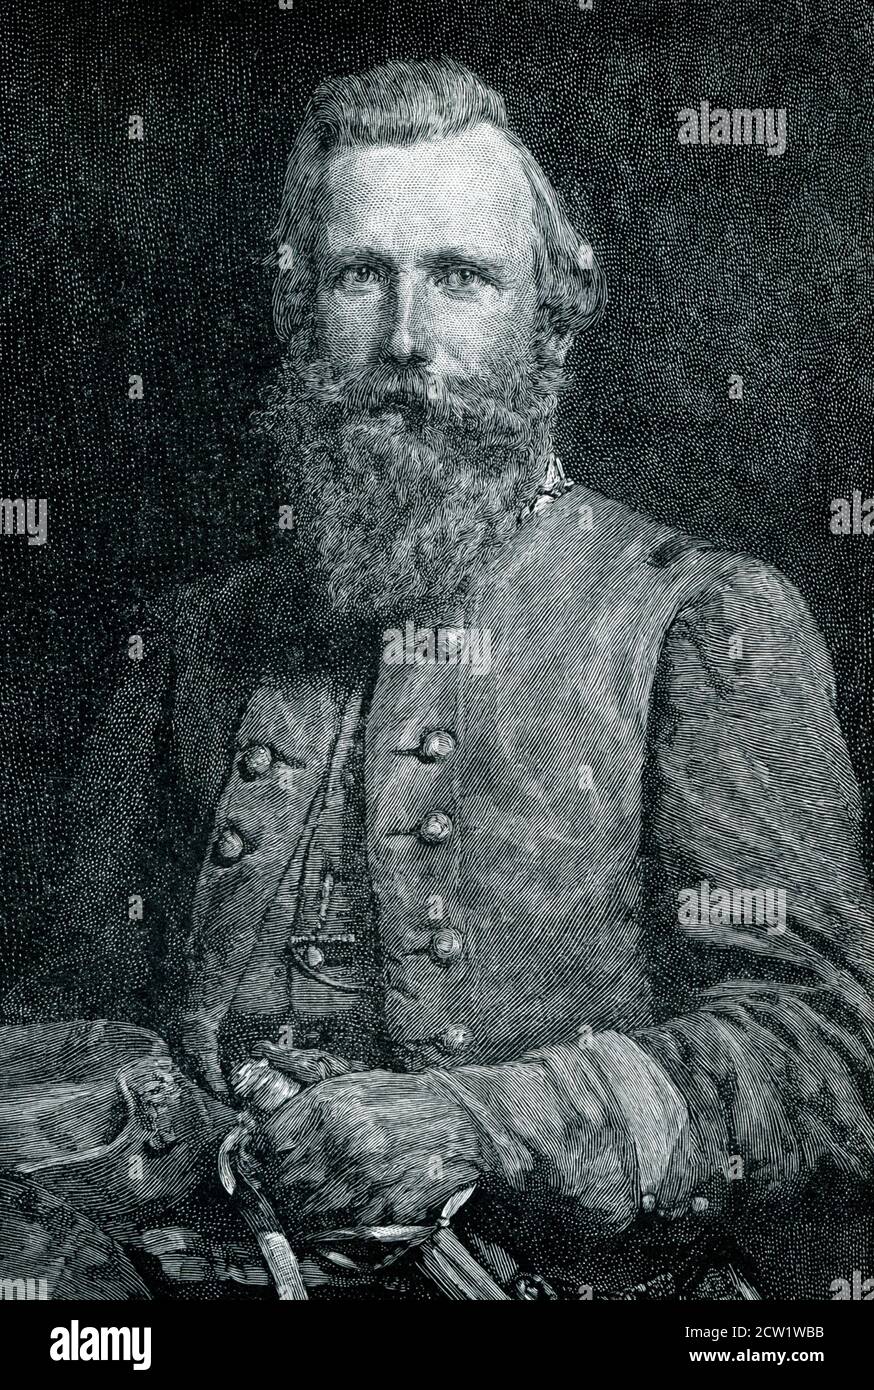 James Ewell Brown 'Jeb' Stuart (6 febbraio 1833 – 12 maggio 1864) è stato un ufficiale dell'esercito degli Stati Uniti della Virginia che divenne un generale dell'esercito degli Stati confederati durante la guerra civile americana. Era conosciuto ai suoi amici come 'Jeb', dalle iniziali dei suoi nomi dati. Foto Stock